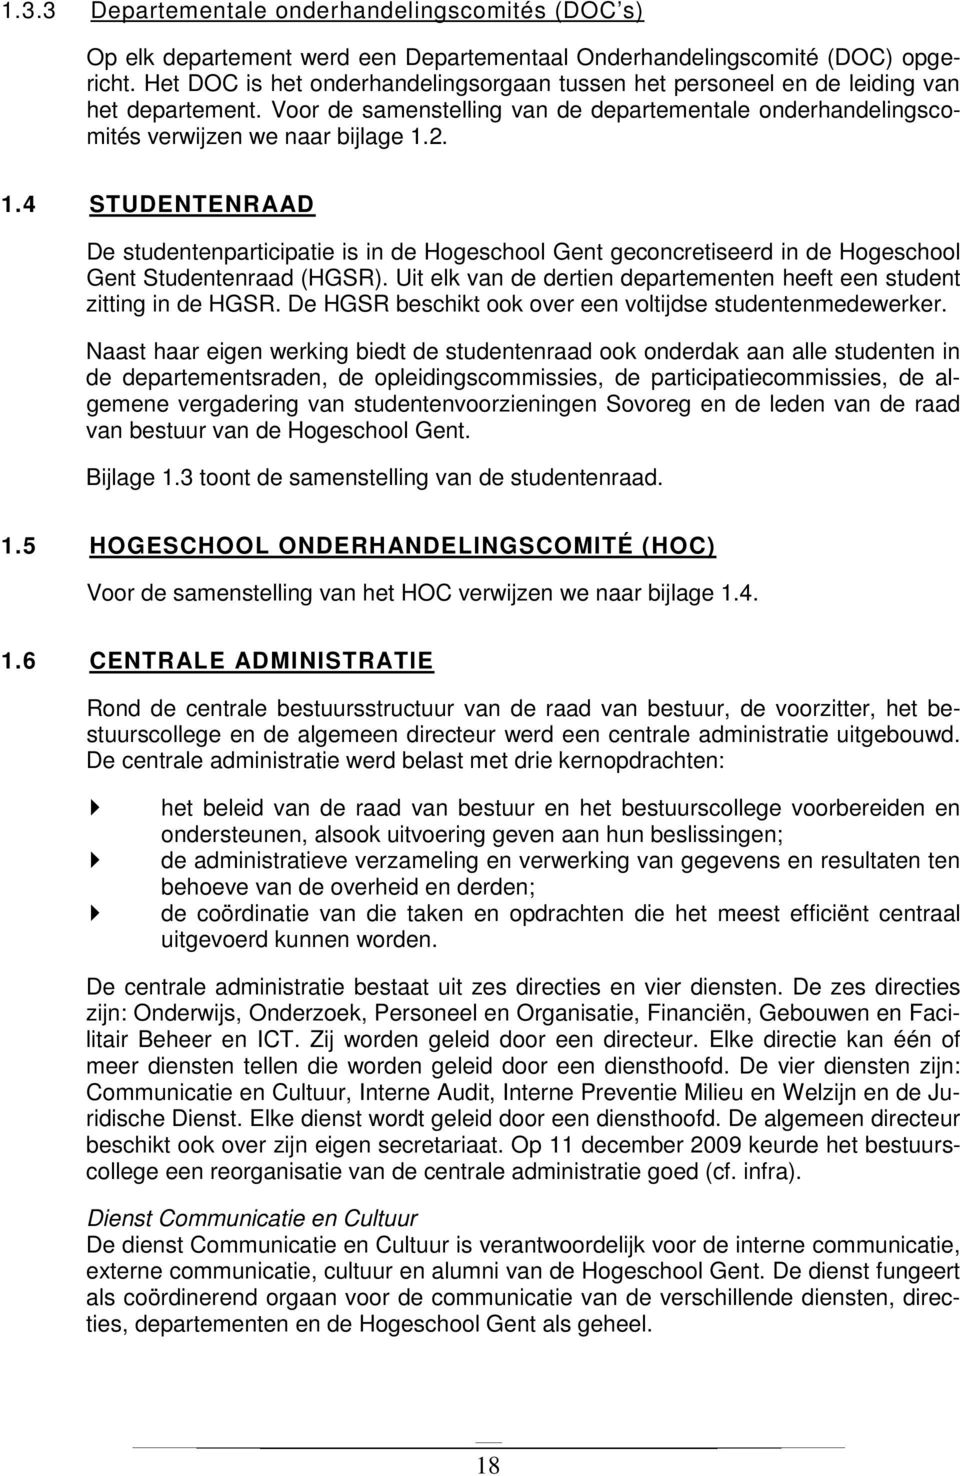 2. 1.4 STUDENTENRAAD De studentenparticipatie is in de Hogeschool Gent geconcretiseerd in de Hogeschool Gent Studentenraad (HGSR).